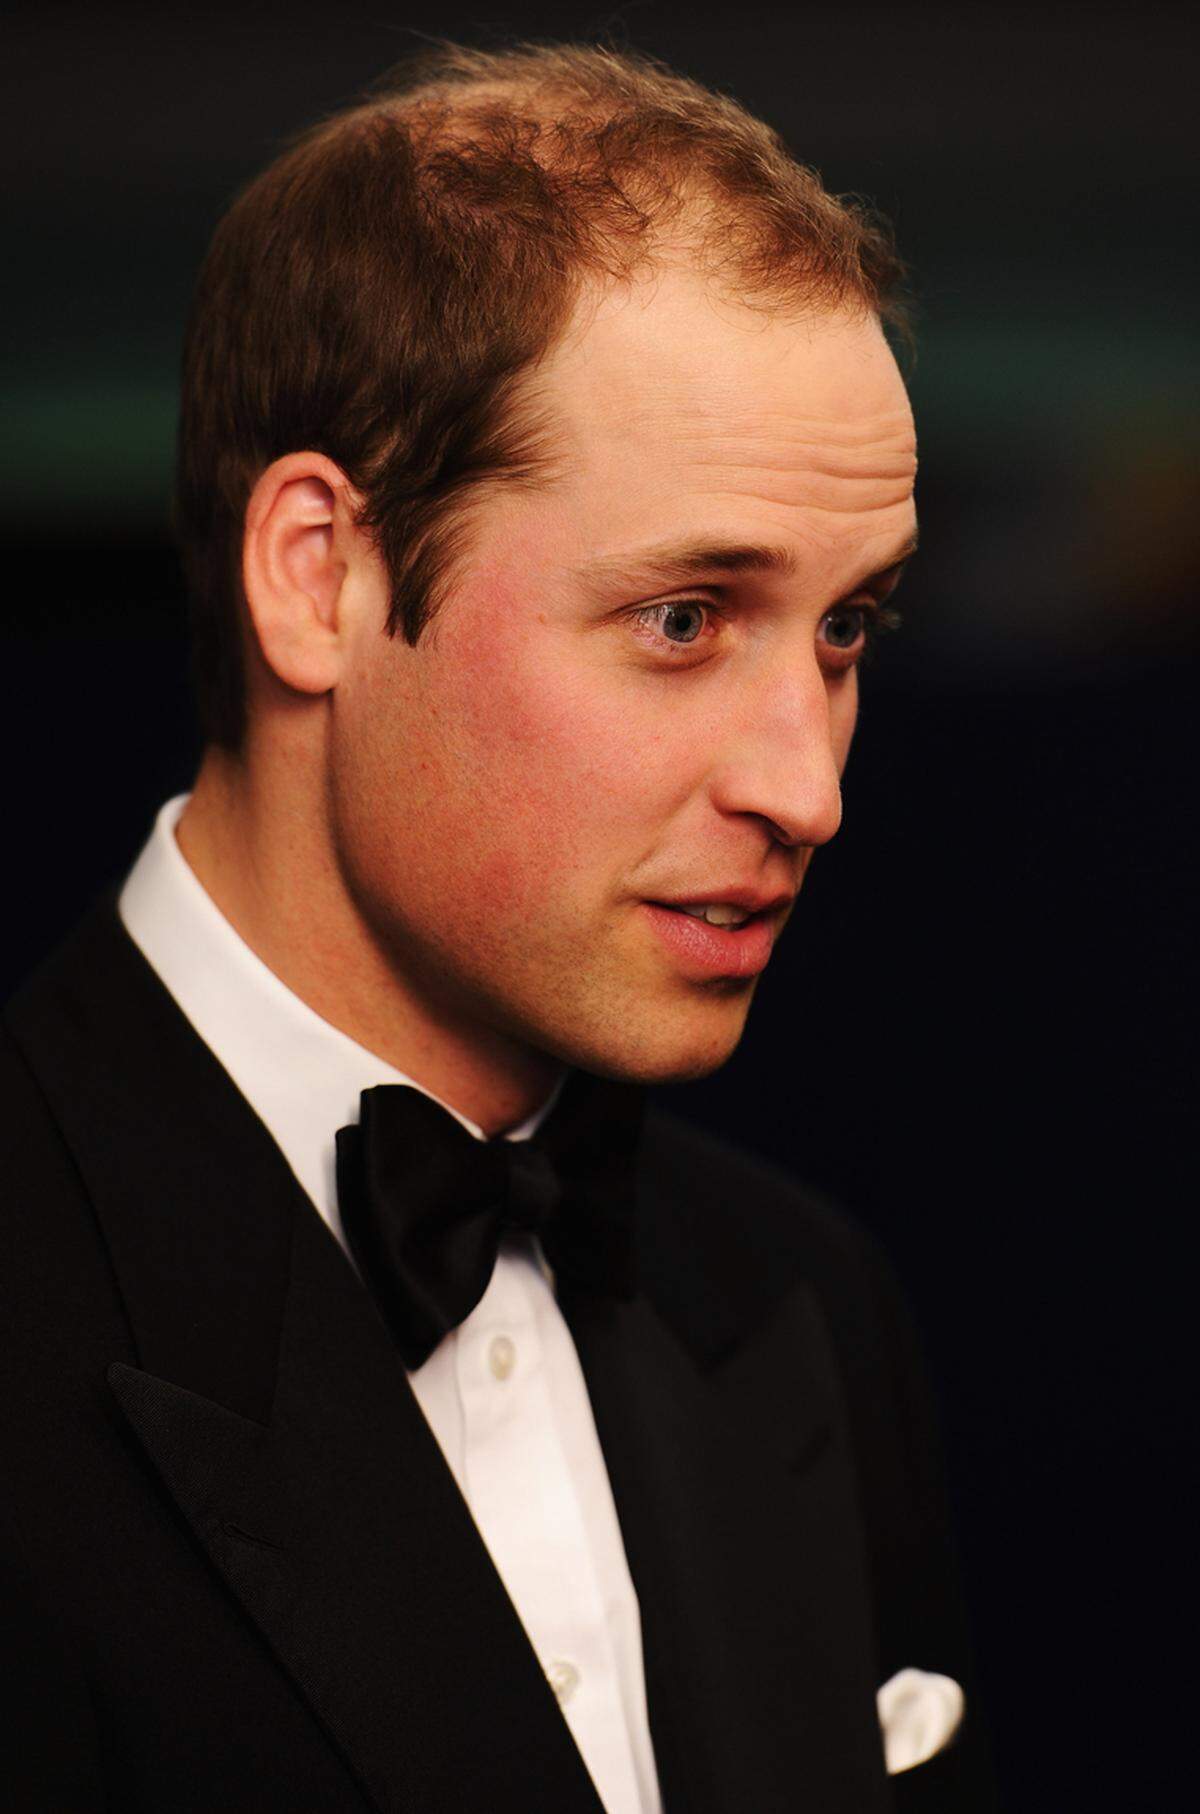 Der gute Geschmack seiner Ehefrau Kate hat auf Prinz William allen Anschein nach nicht abgefärbt. Unter die Top 50 der bestgekleideten Männer des Magazins GQ schaffte es der Kronprinz in diesem Jahr nämlich nicht.